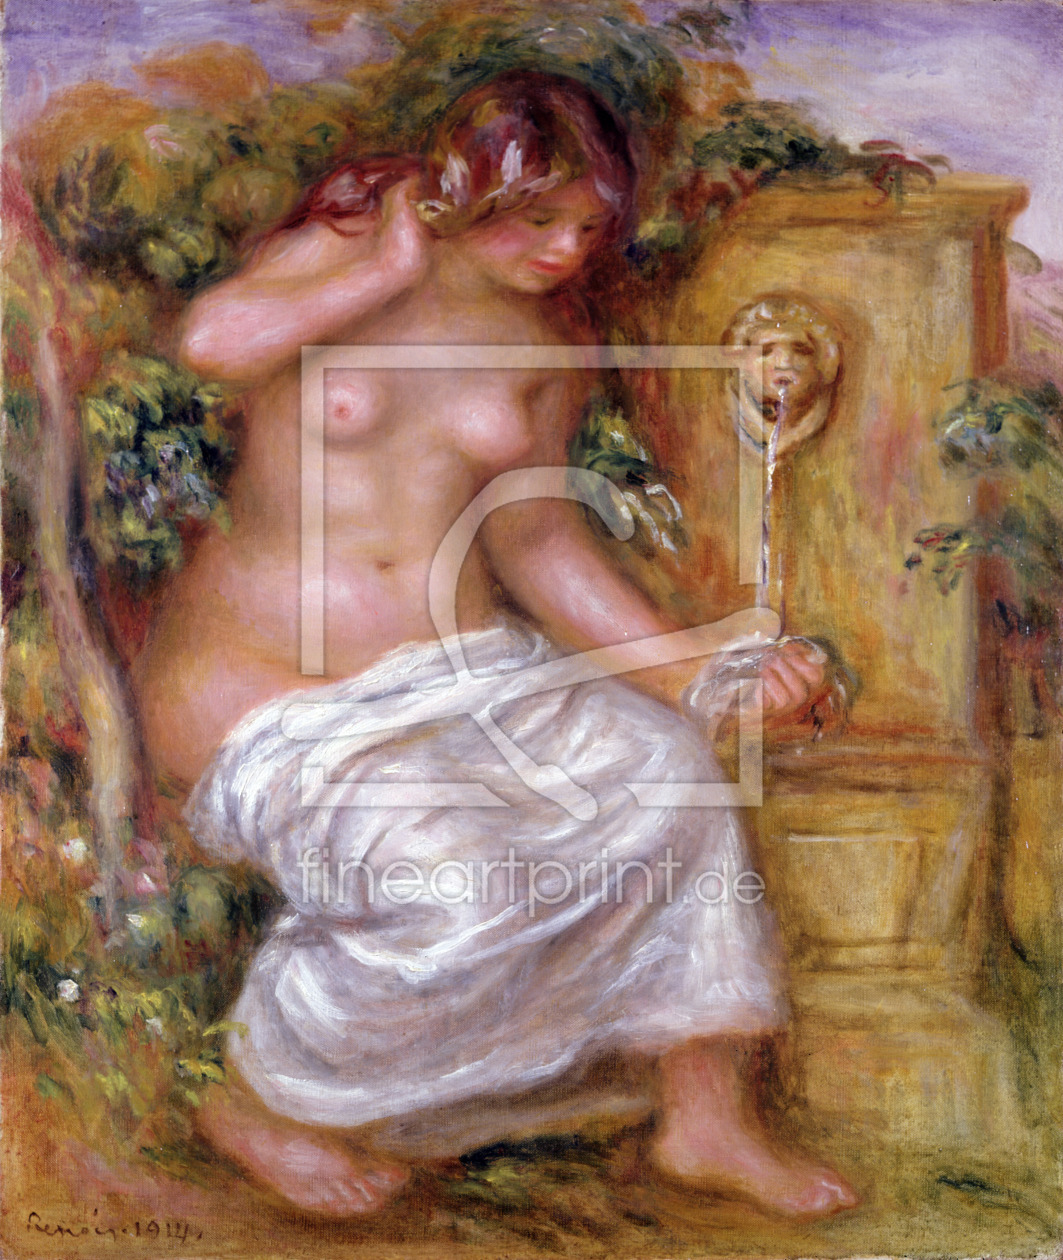 Bild-Nr.: 31001141 The Bather at the Fountain, 1914 erstellt von Renoir, Pierre-Auguste